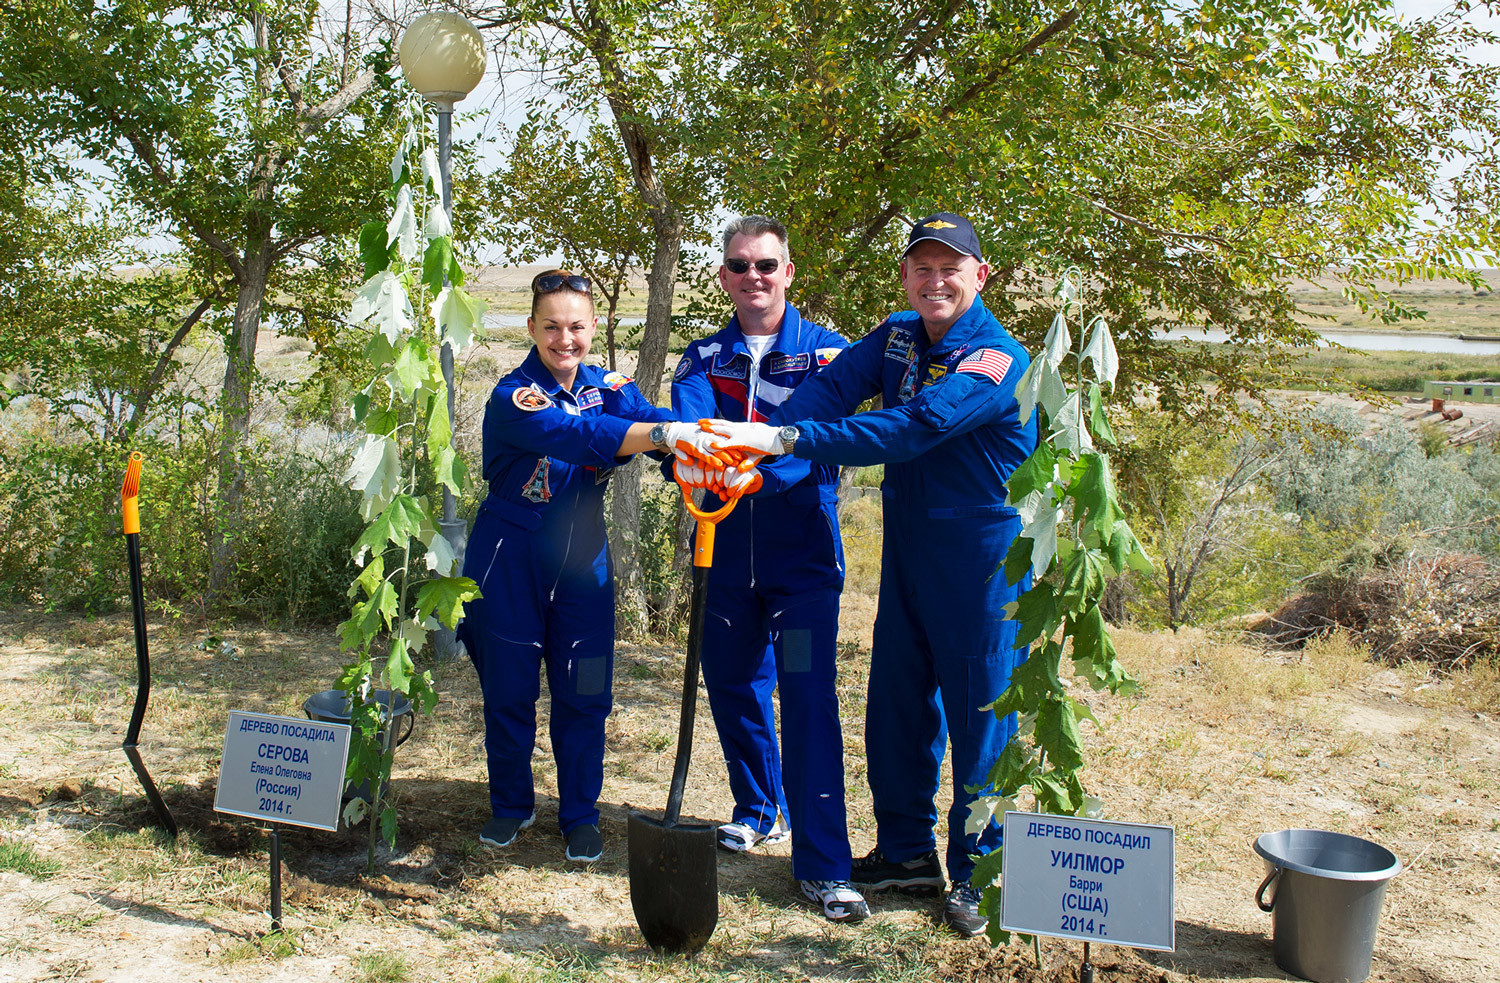 Les cosmonautes Alexandre Samokoutiaïev et Elena Serova et l'astronaute américain Barry Wilmore plantent des arbres au Centre spatial de Baïkonour, 2014